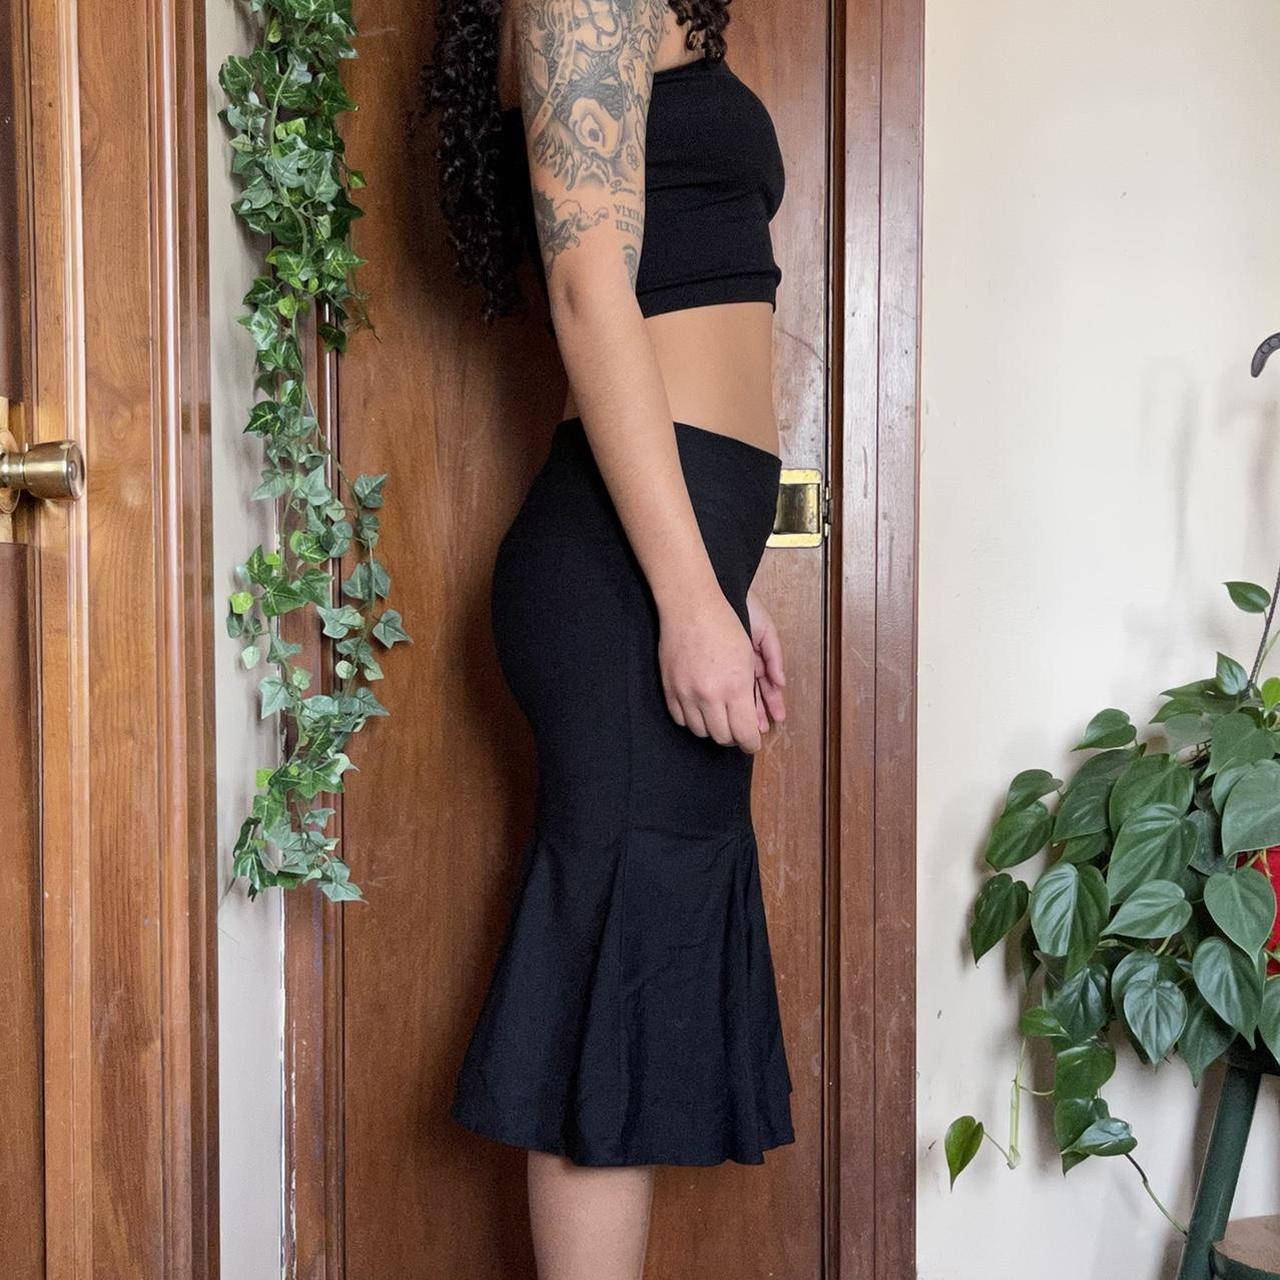 Bebe Women's Black Skirt (2)